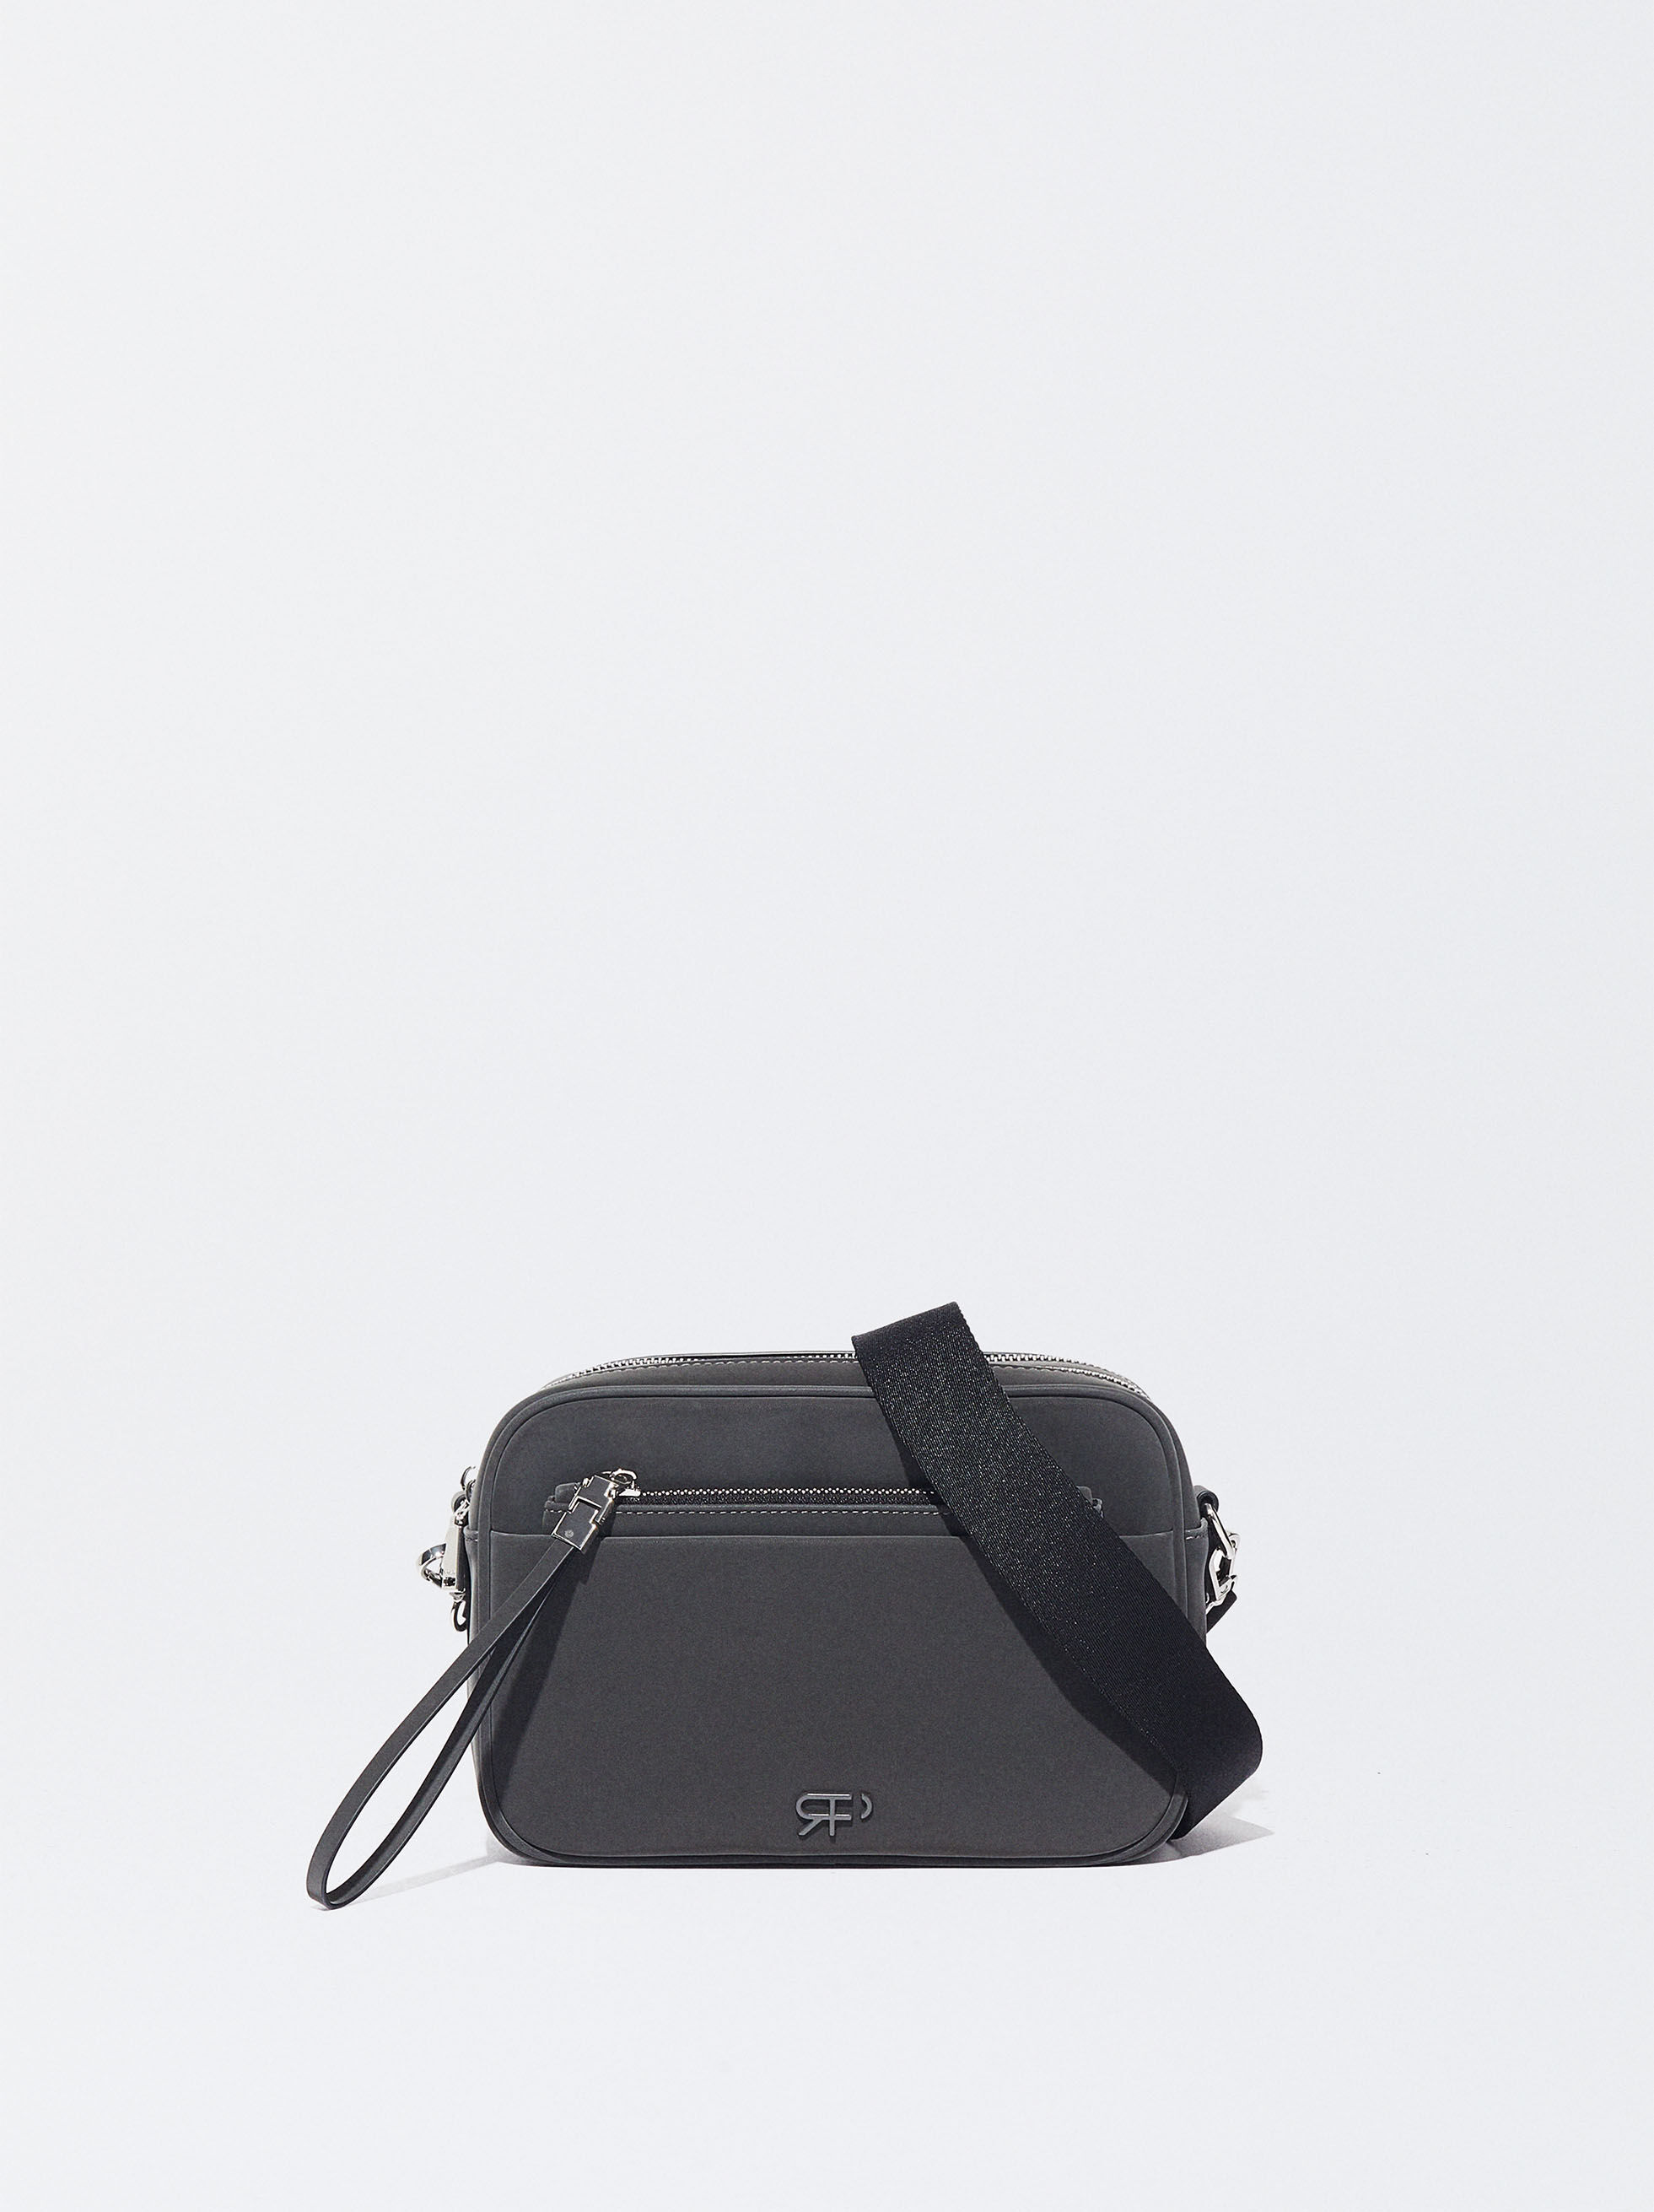 Designer tote bag | Fashion Tote | Australia - Mr Poppins+Co